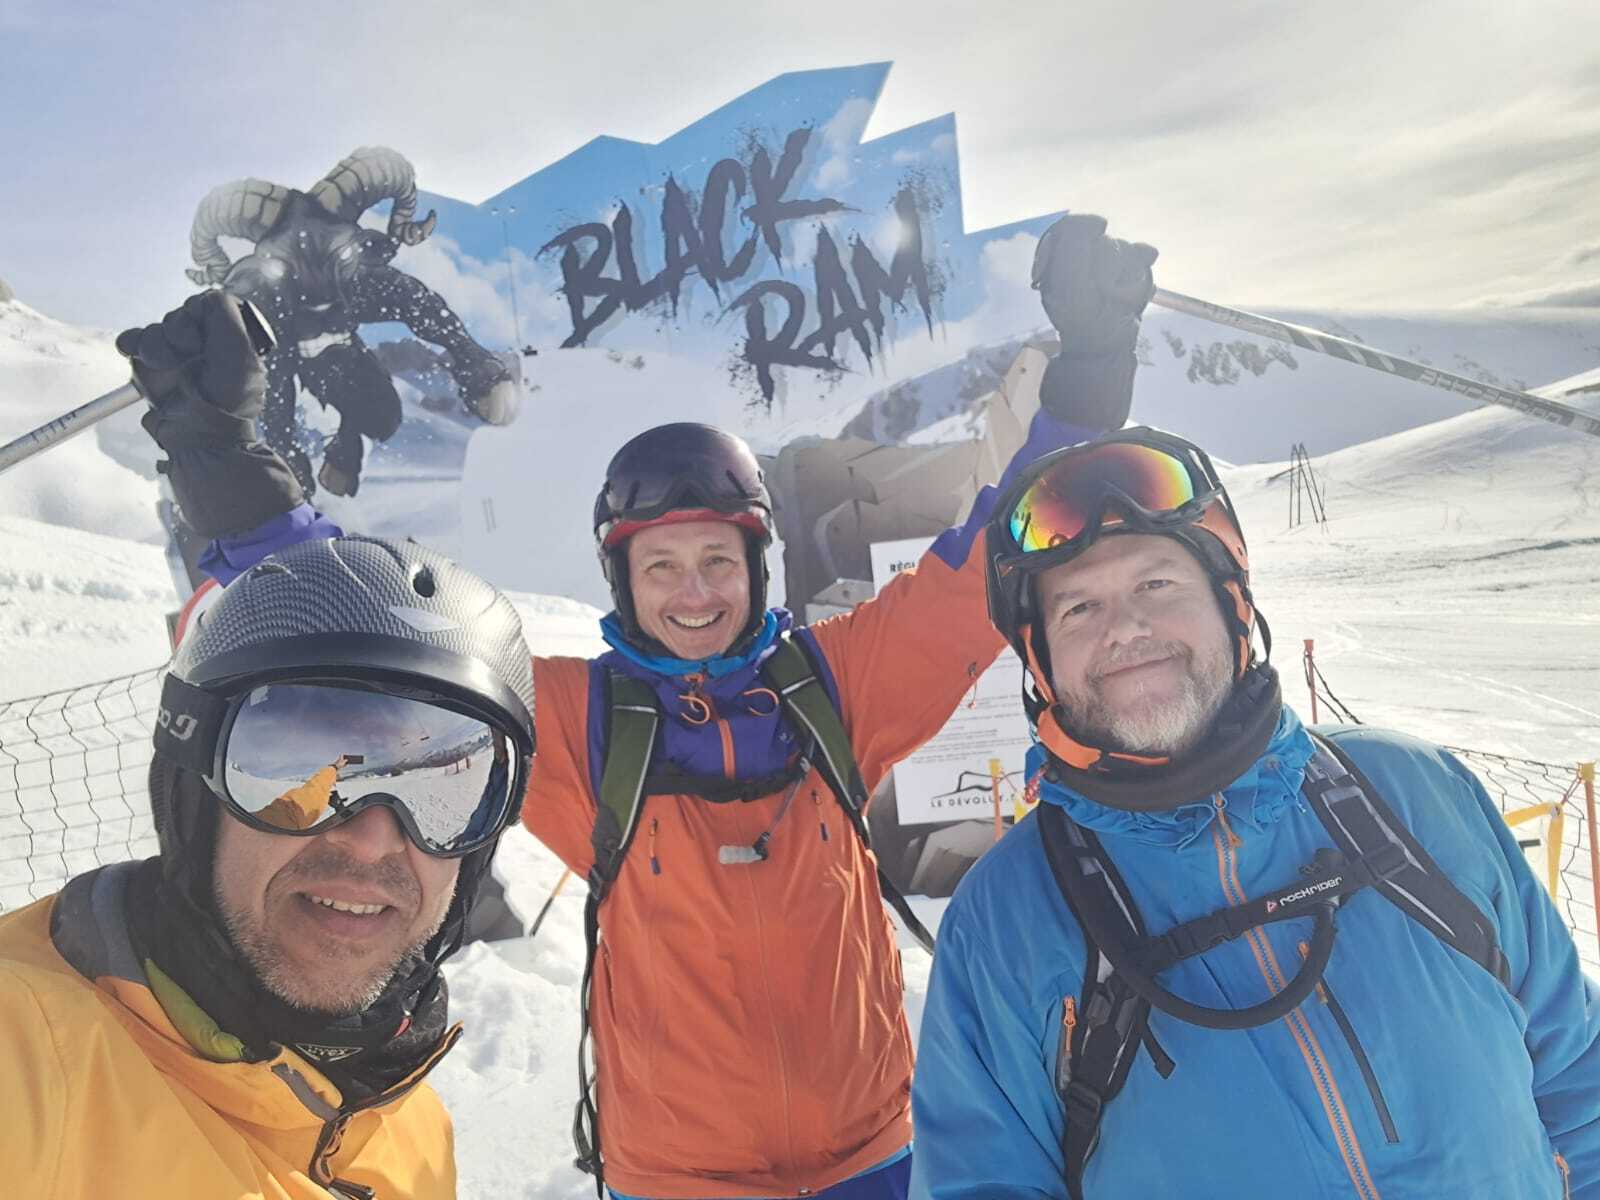 Autorretrato de los tres carpantas, las sonrisas delatan la mejor esquiada de la semana